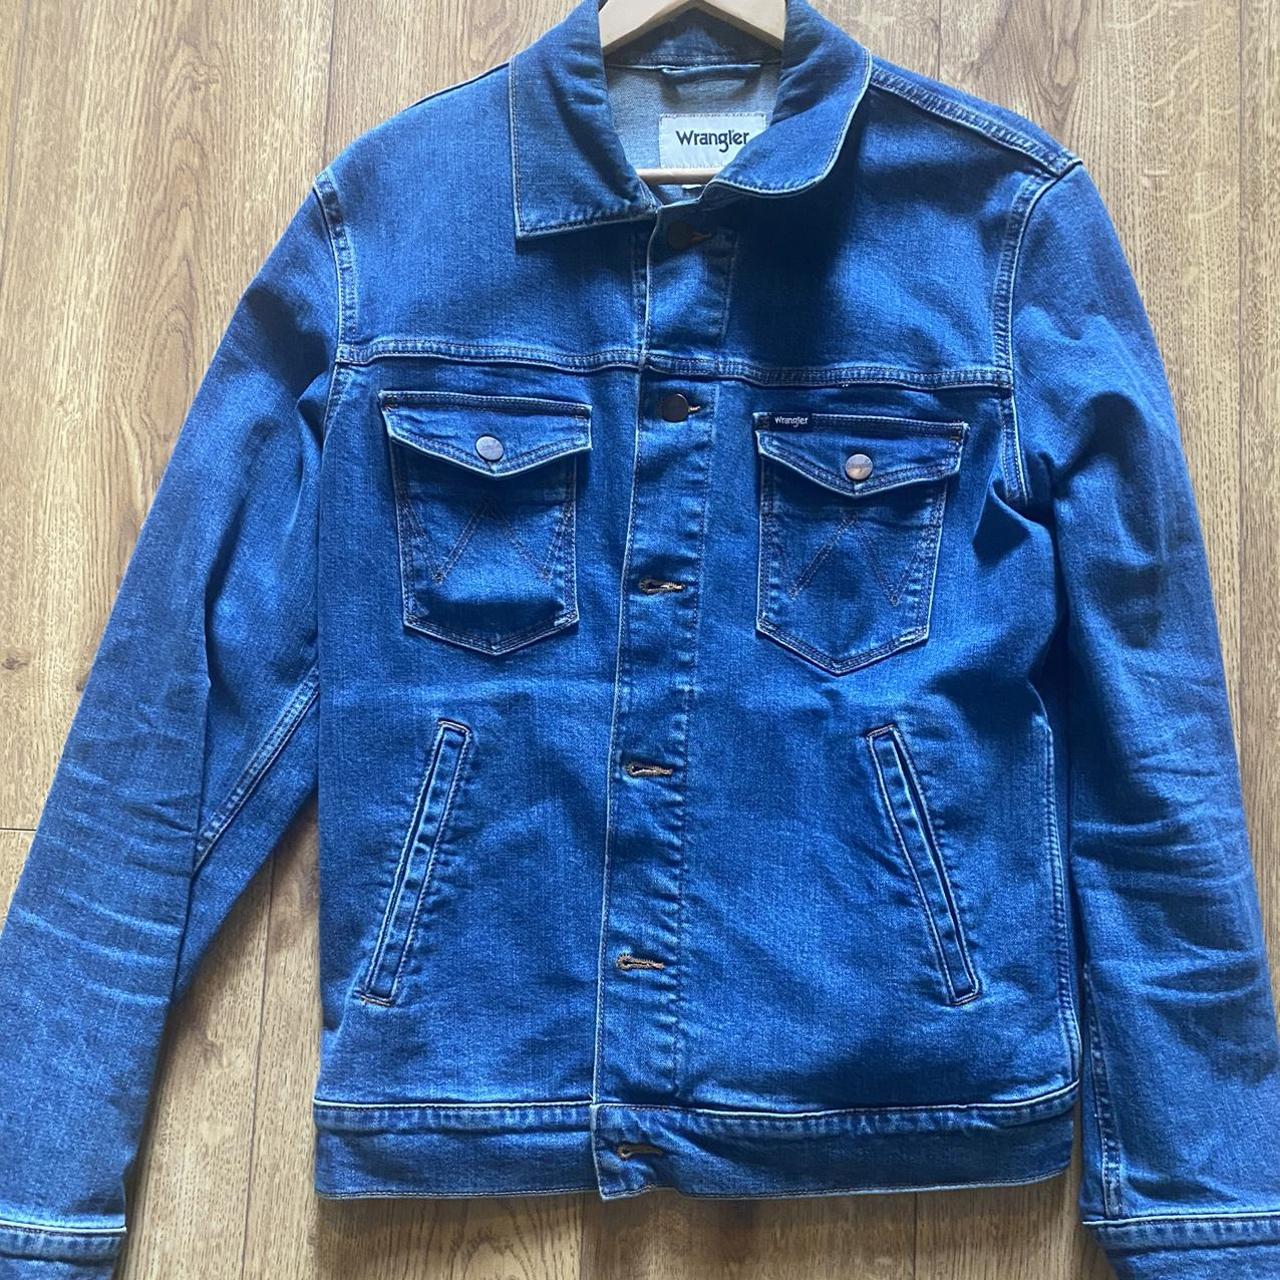 Vintage Wrangler denim jacket - Depop